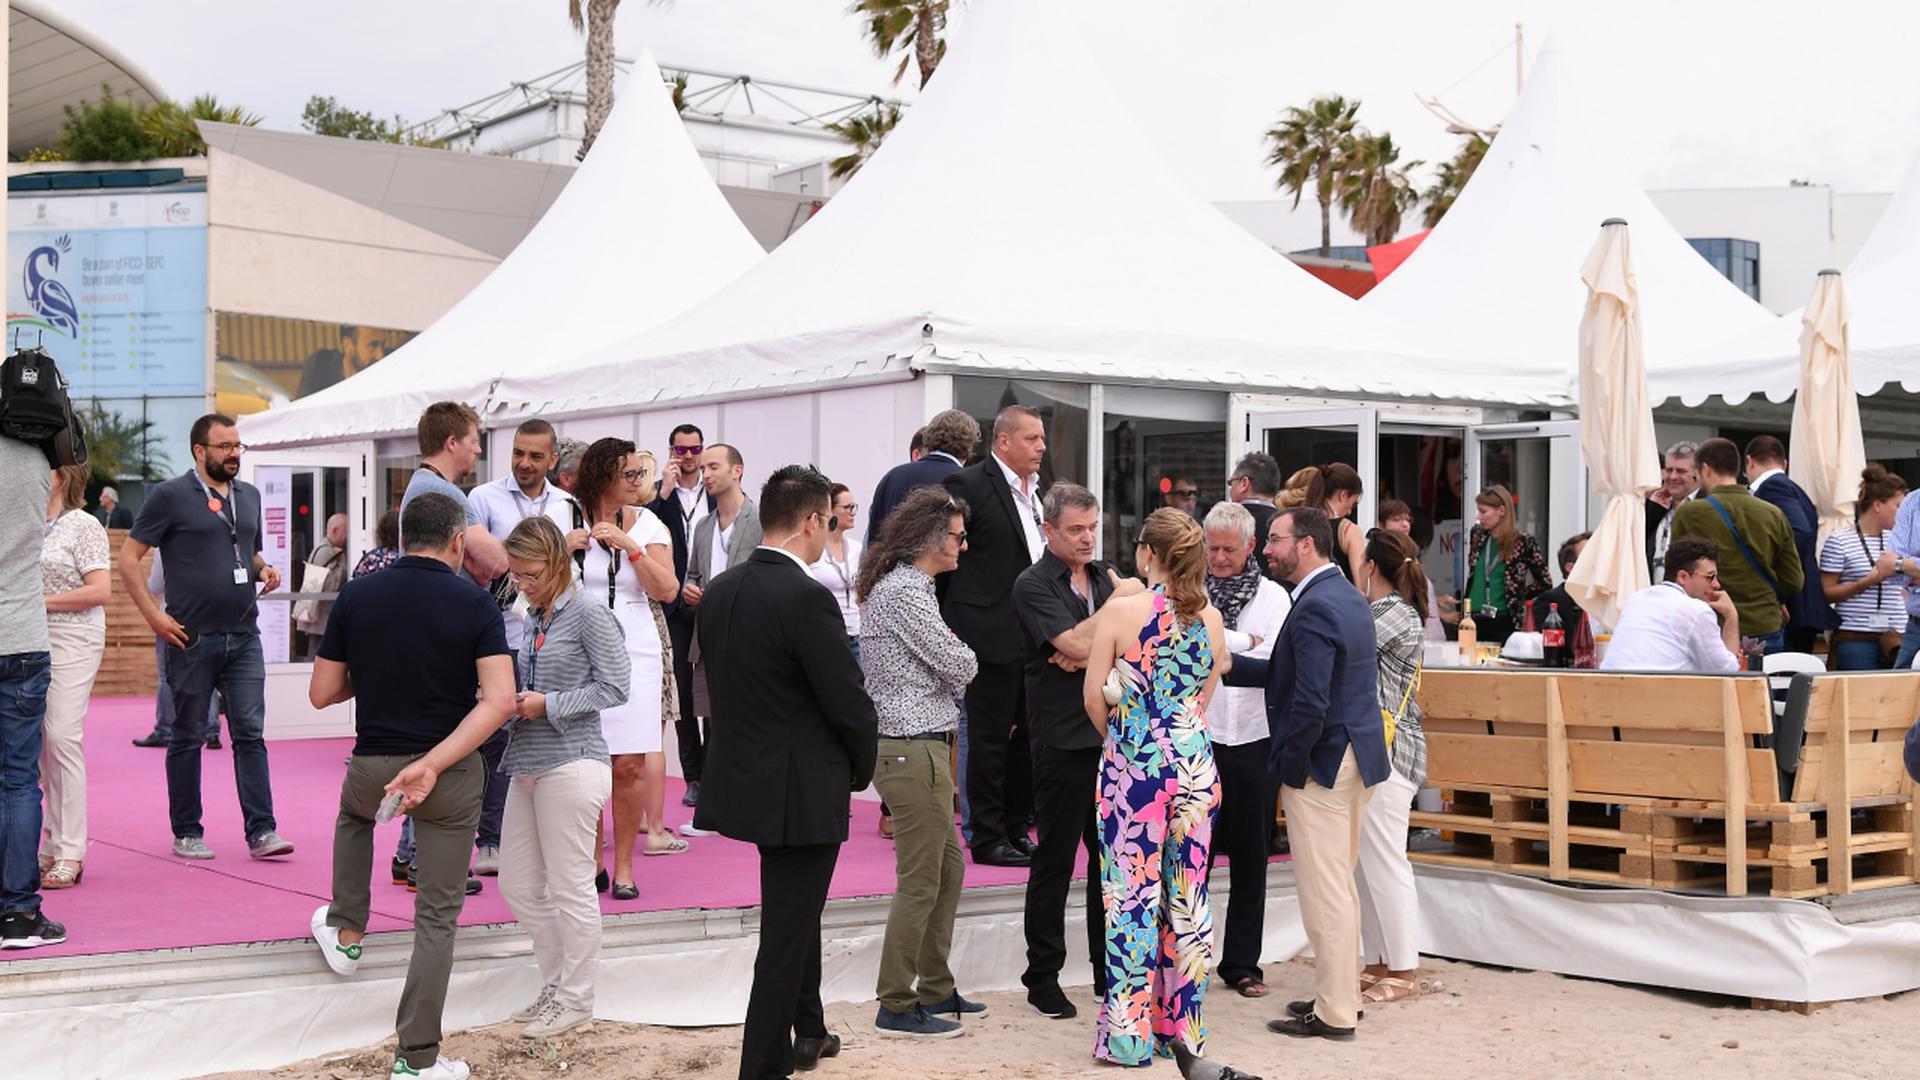 "Journée luxembourgeoise" à Cannes.

